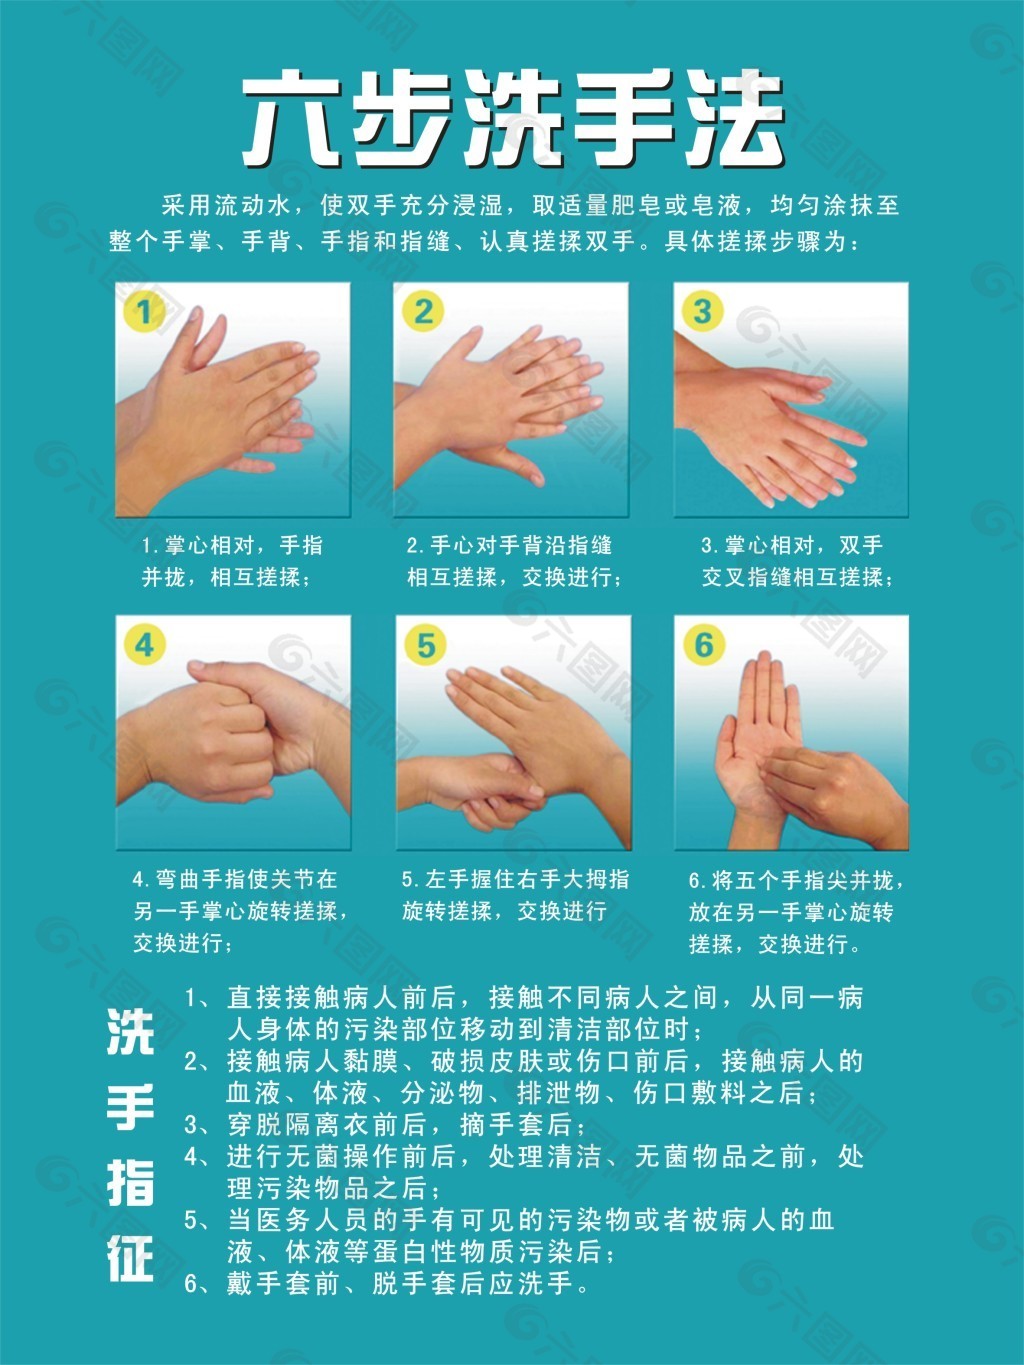 世界手卫生日|湖南省交通医院开展“数秒挽救生命 请清洁您的双手”主题宣传活动 - 知乎